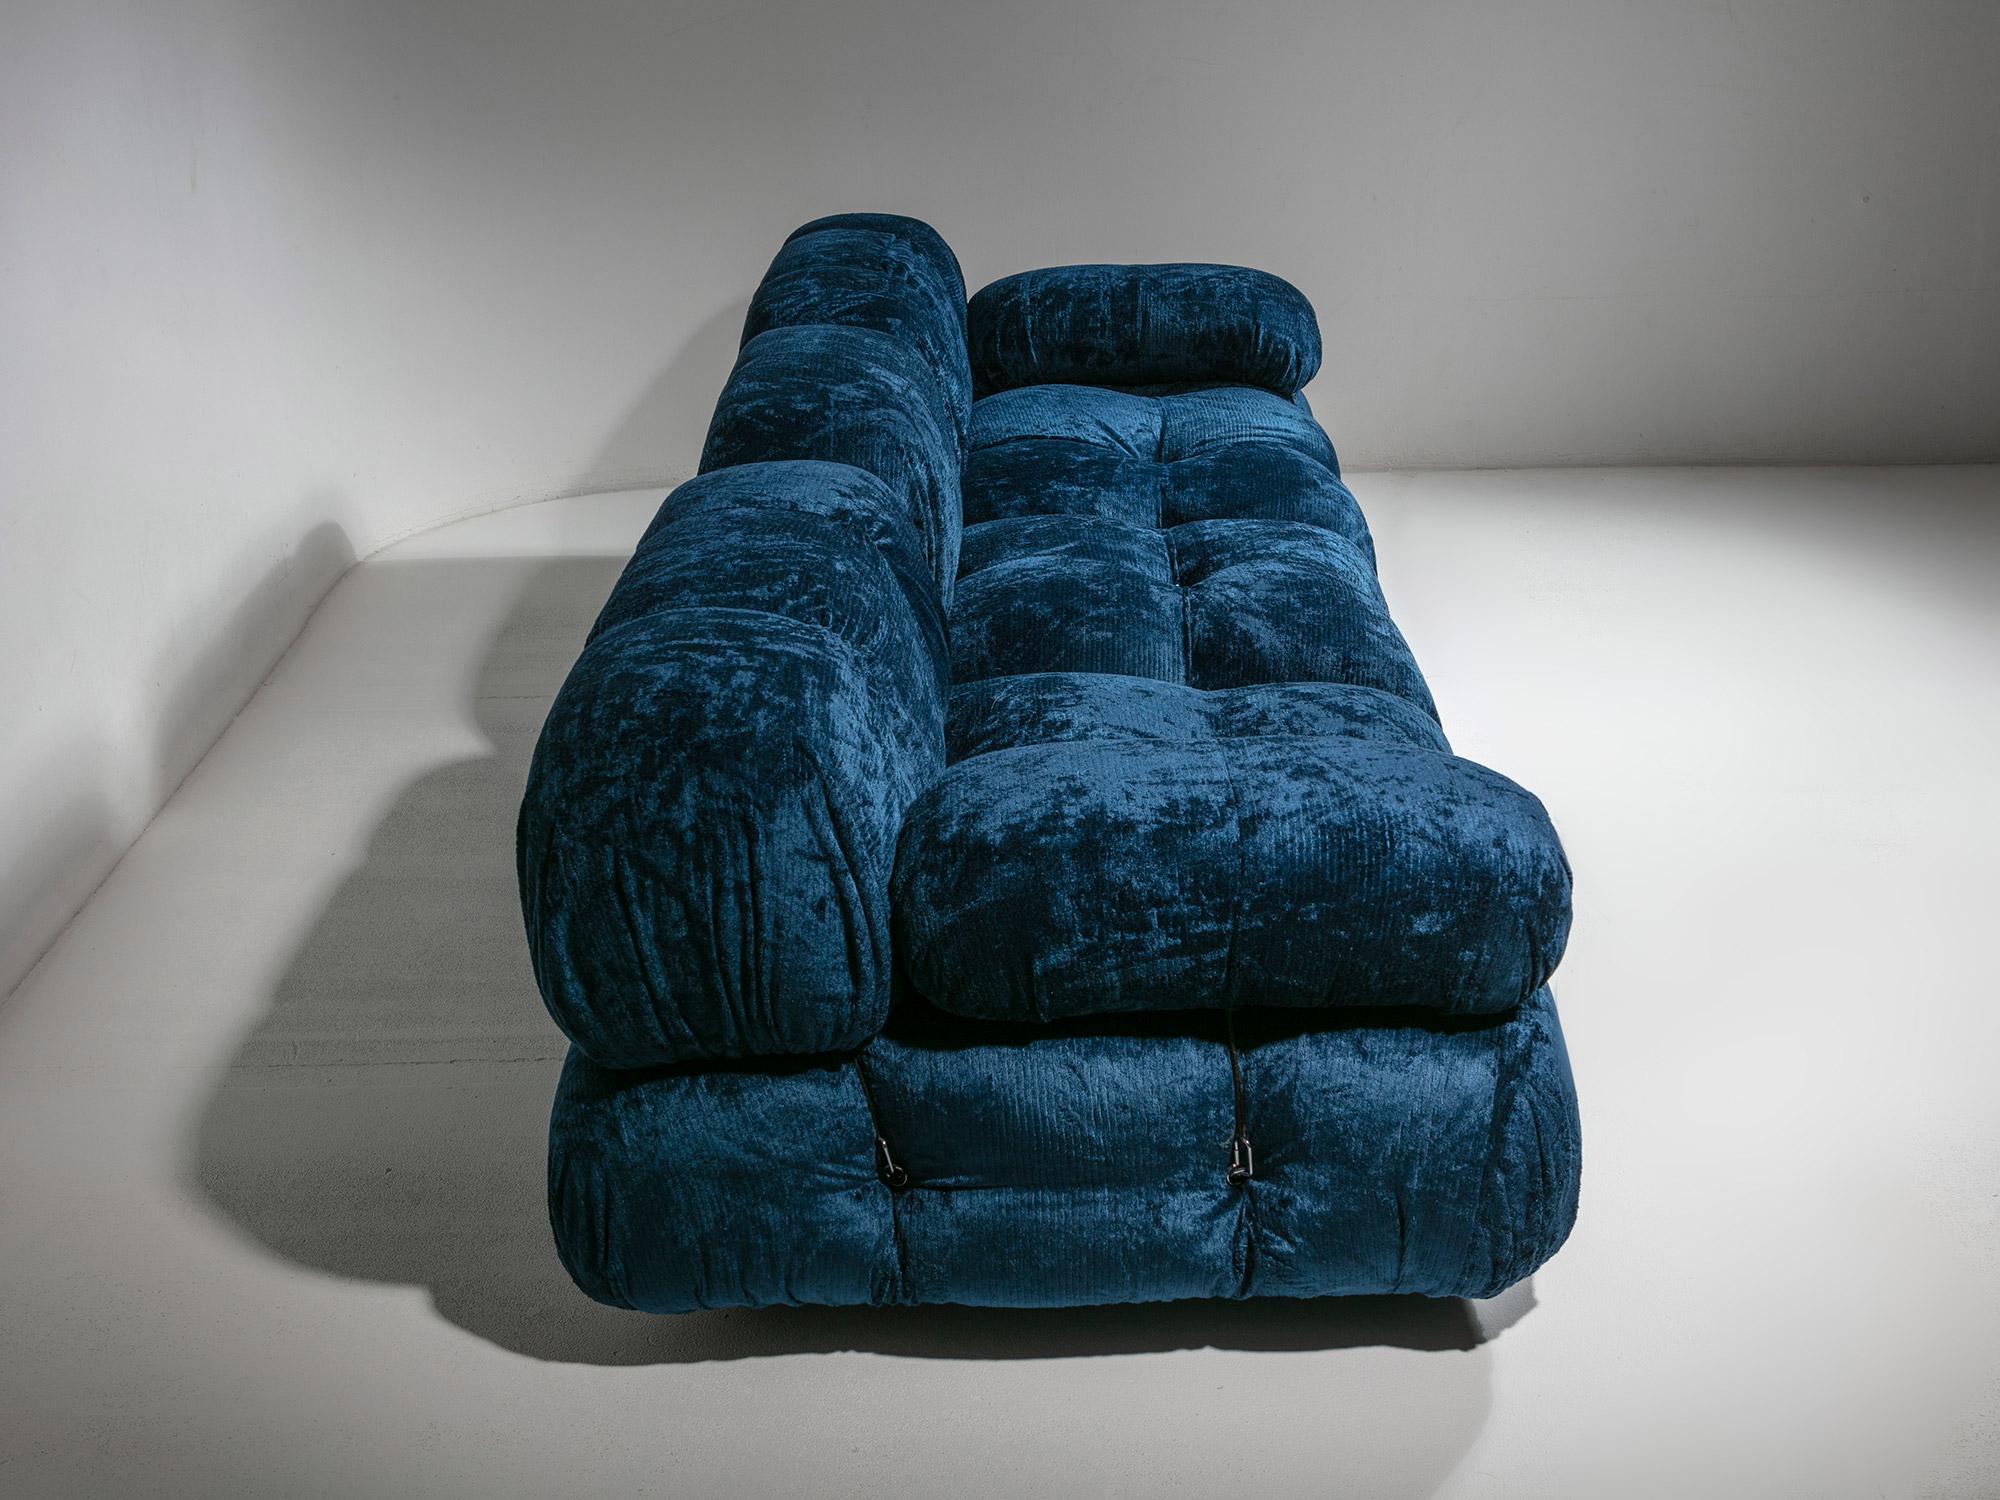 Blaues Chenille-Sofa „Camaleonda“ in Blau von Mario Bellini für B&B, Italien, 1970er Jahre (Ende des 20. Jahrhunderts) im Angebot